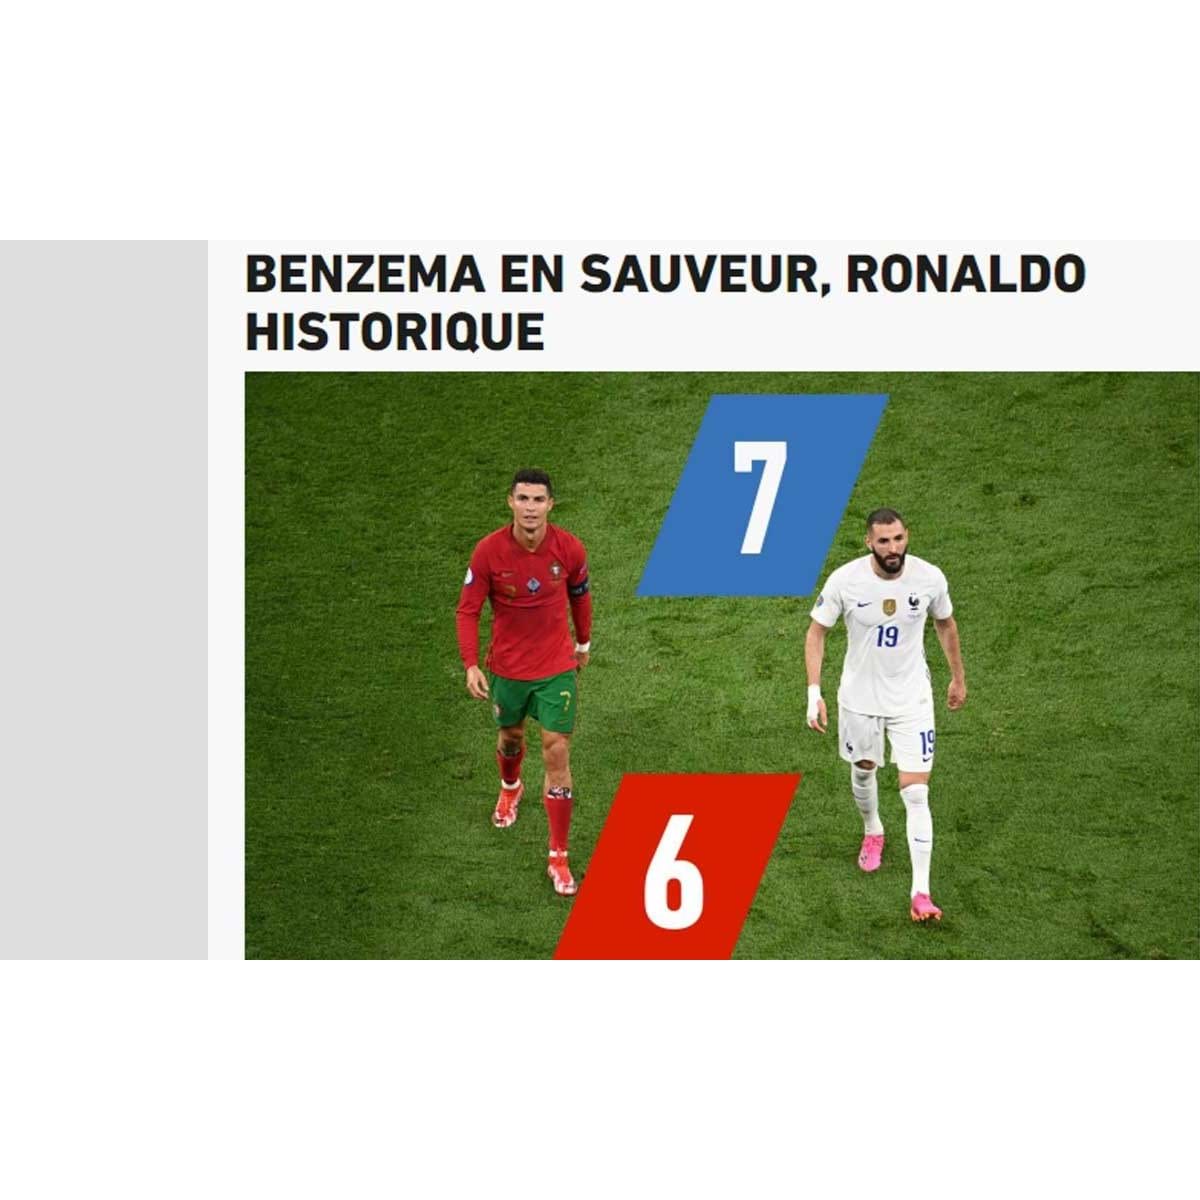 Mourinho e o jogo de Portugal com a França: «Estou preocupado» - Euro  2020 - Jornal Record